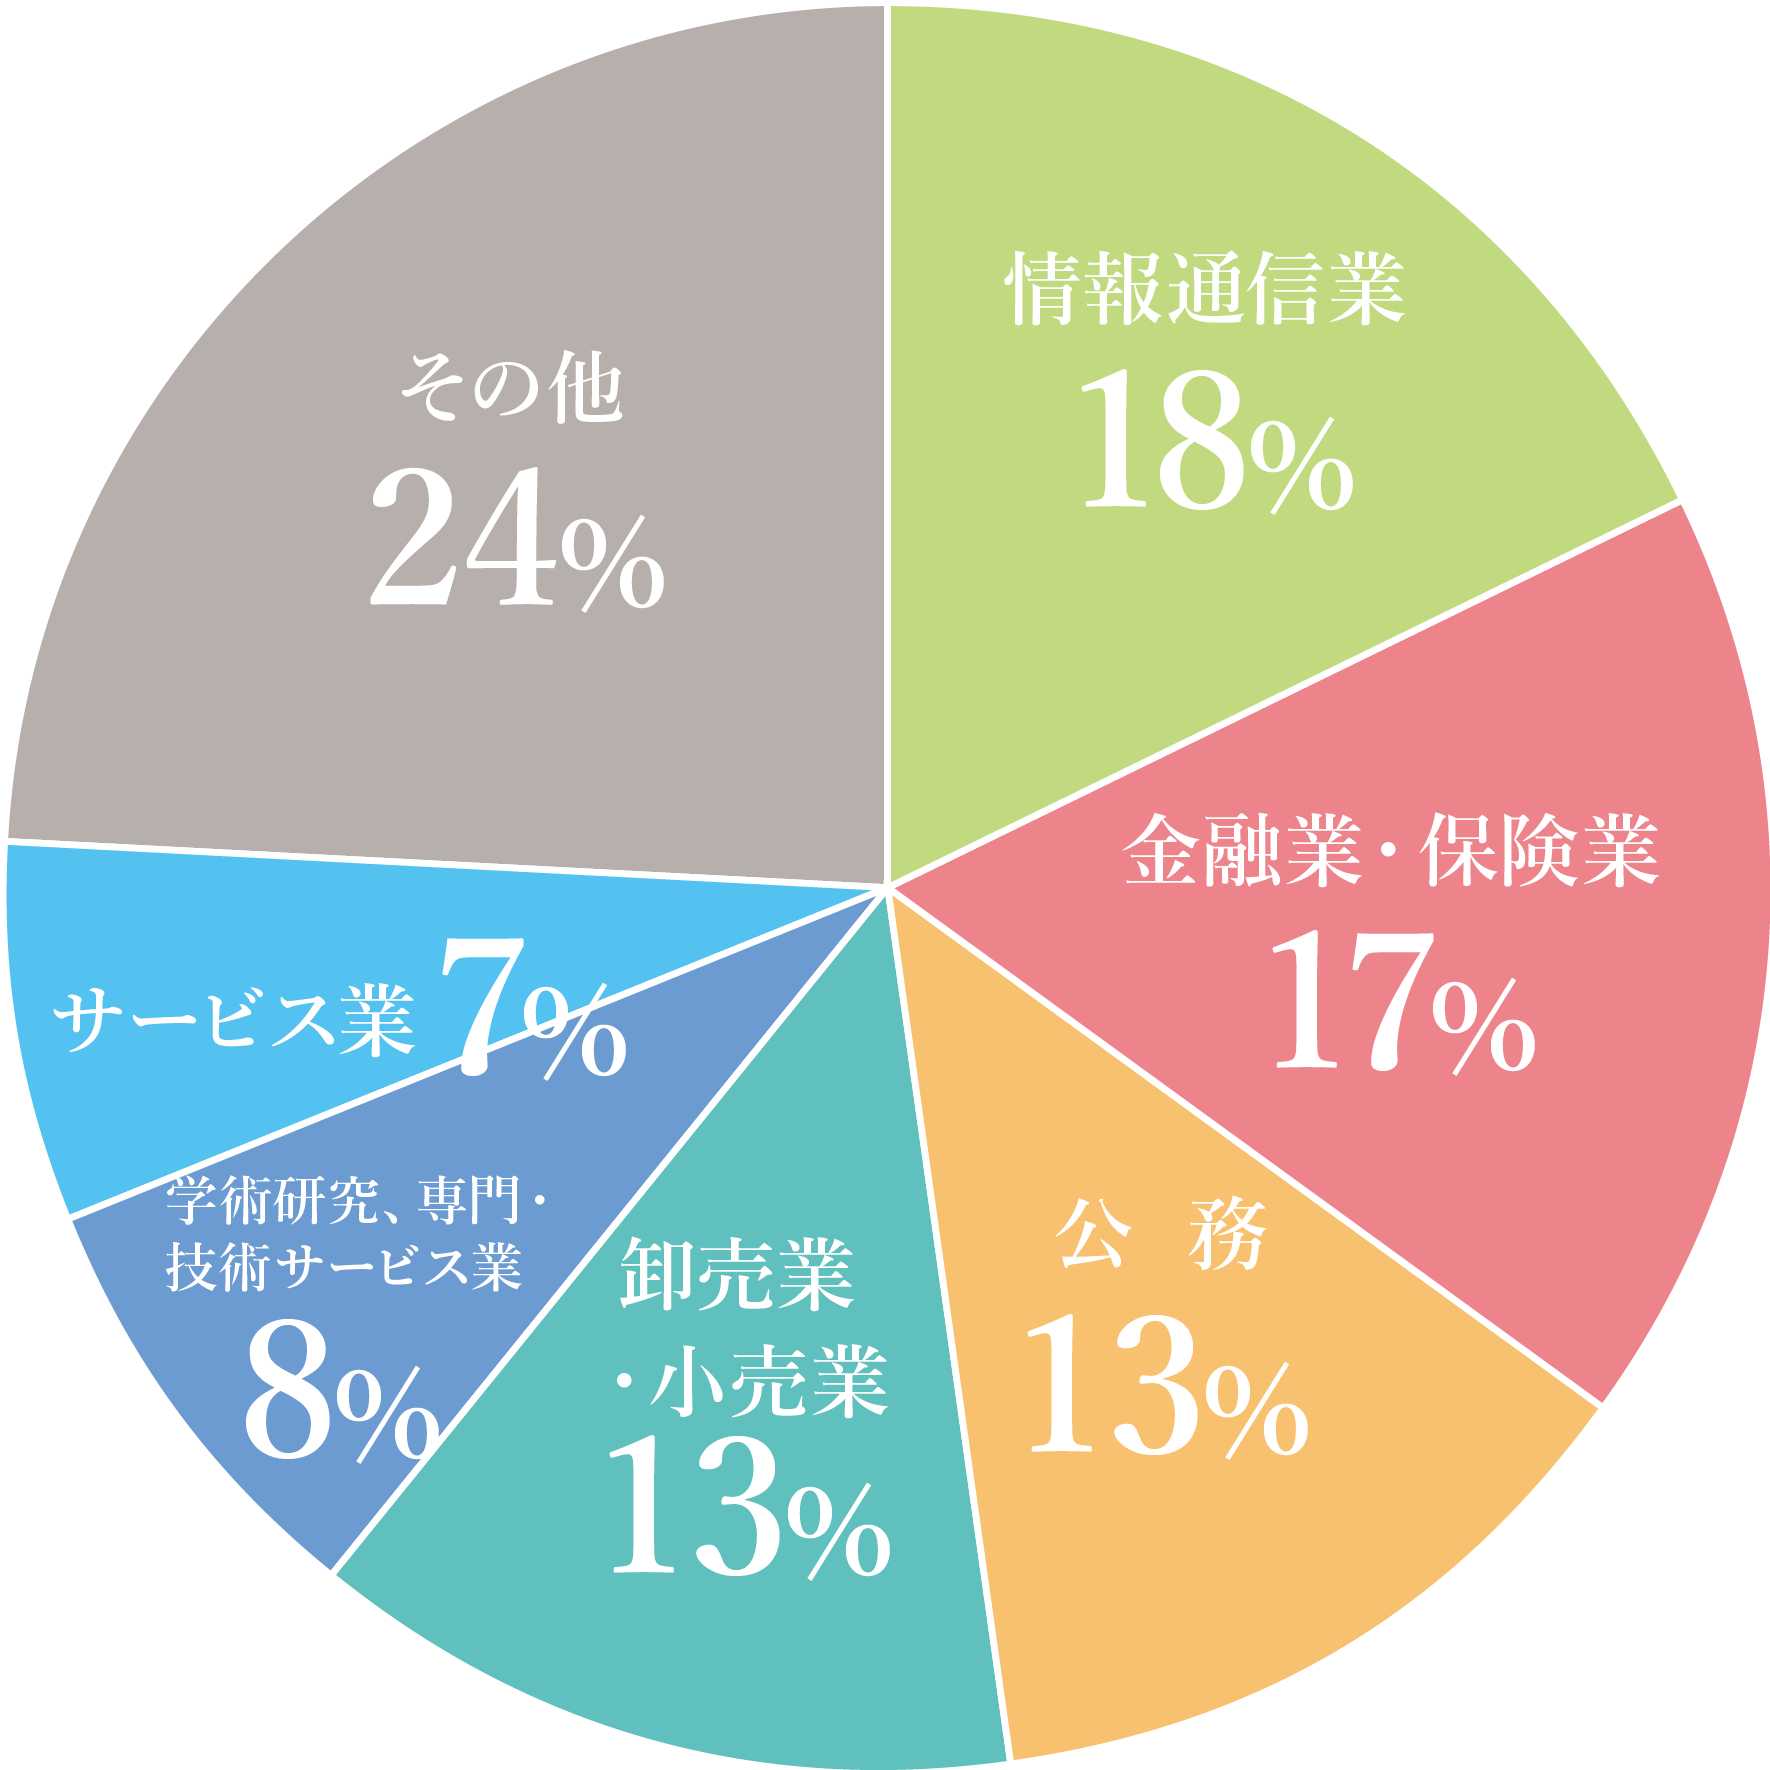 就職先データ円グラフ